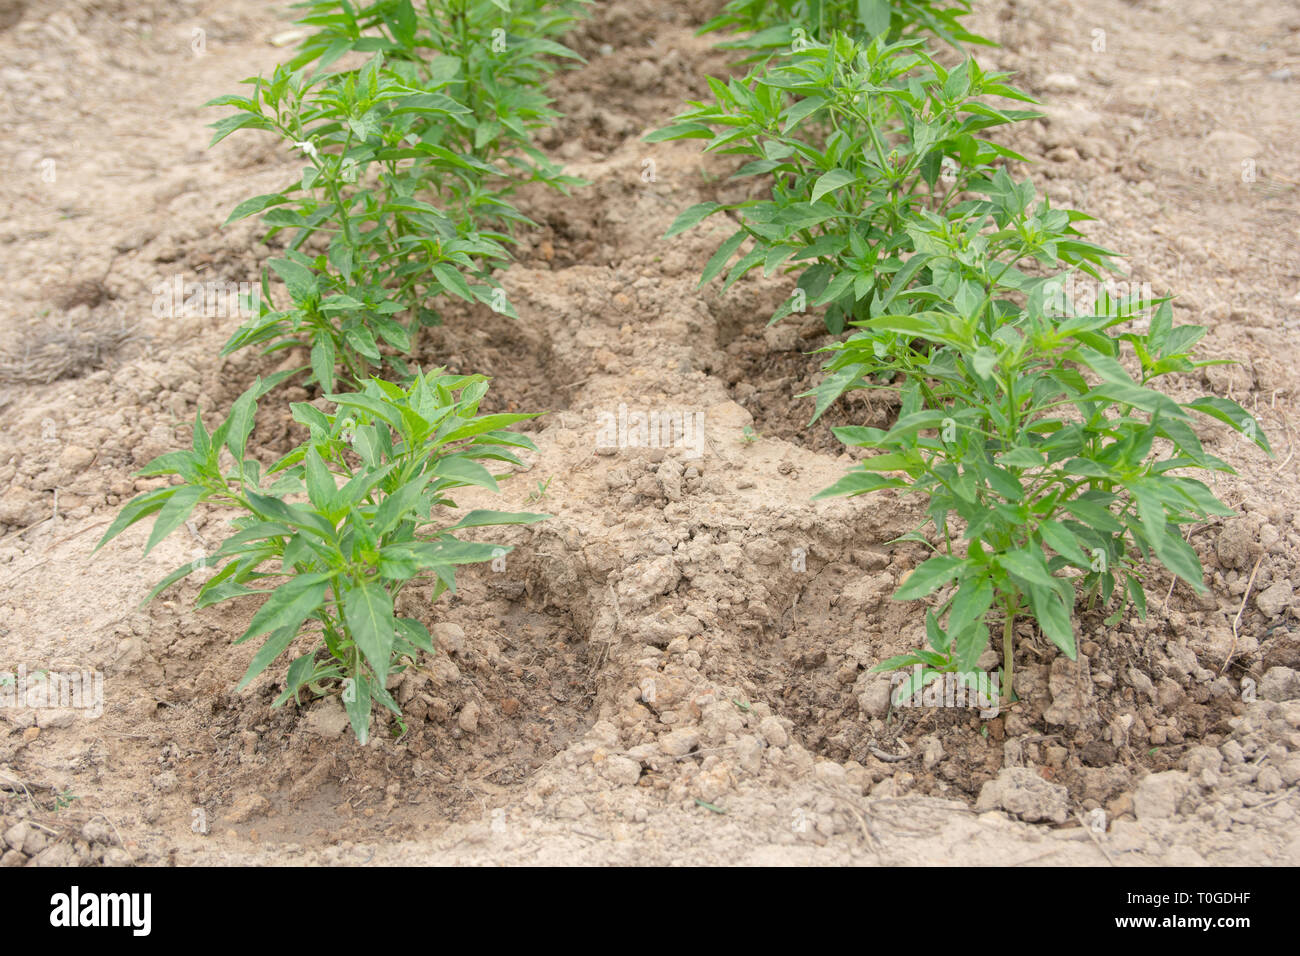 Chili Baum Pflanzen auf der Erde. Junge chili Pflanze - Bild  Stockfotografie - Alamy